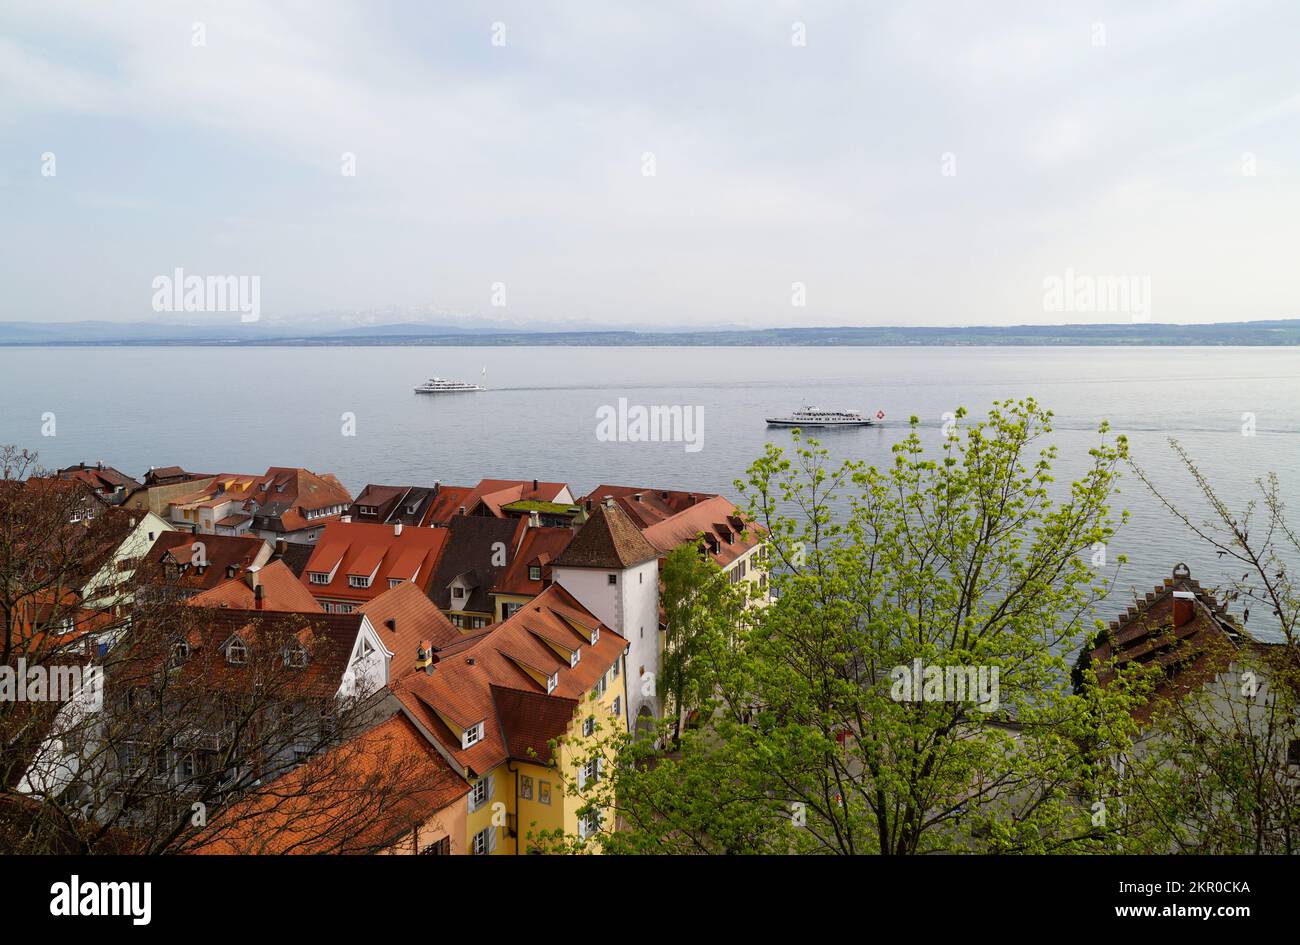 Une vue sur les toits de la ville médiévale allemande pittoresque de Meersburg sur le lac de Constance ou Bodensee lors d'une journée découverte au printemps (Allemagne) Banque D'Images